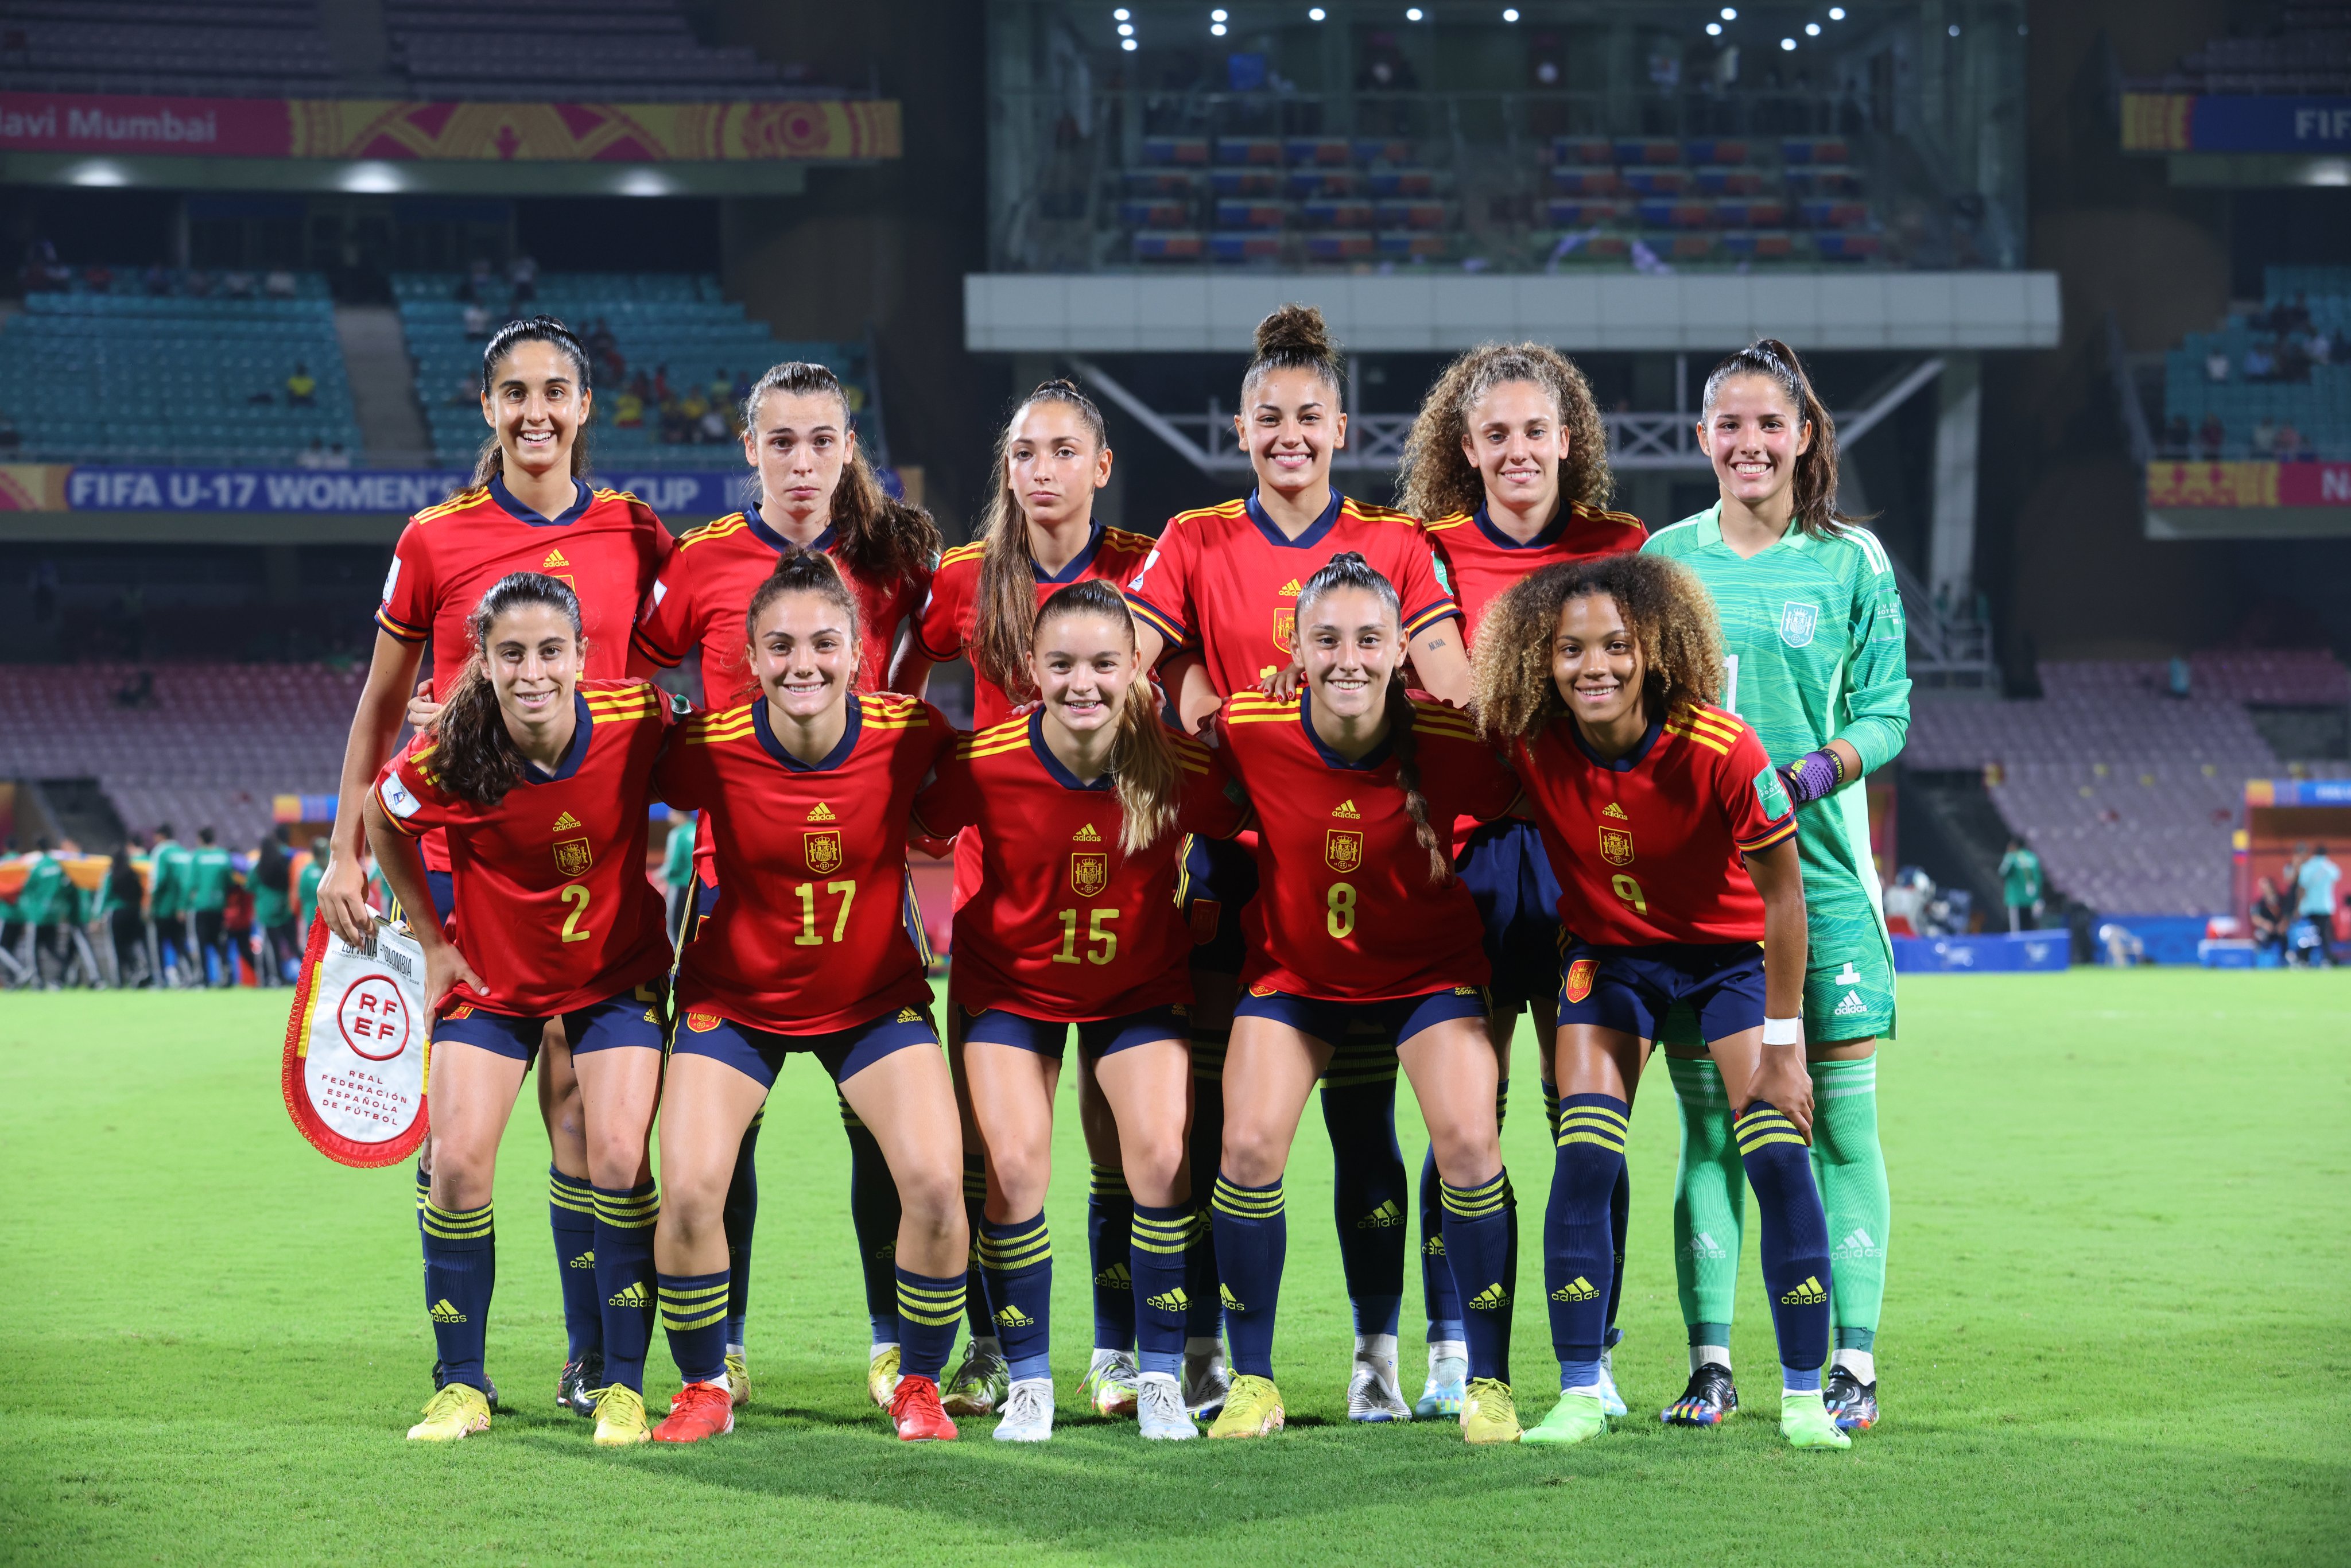 Jugadores de selección femenina de fútbol de españa